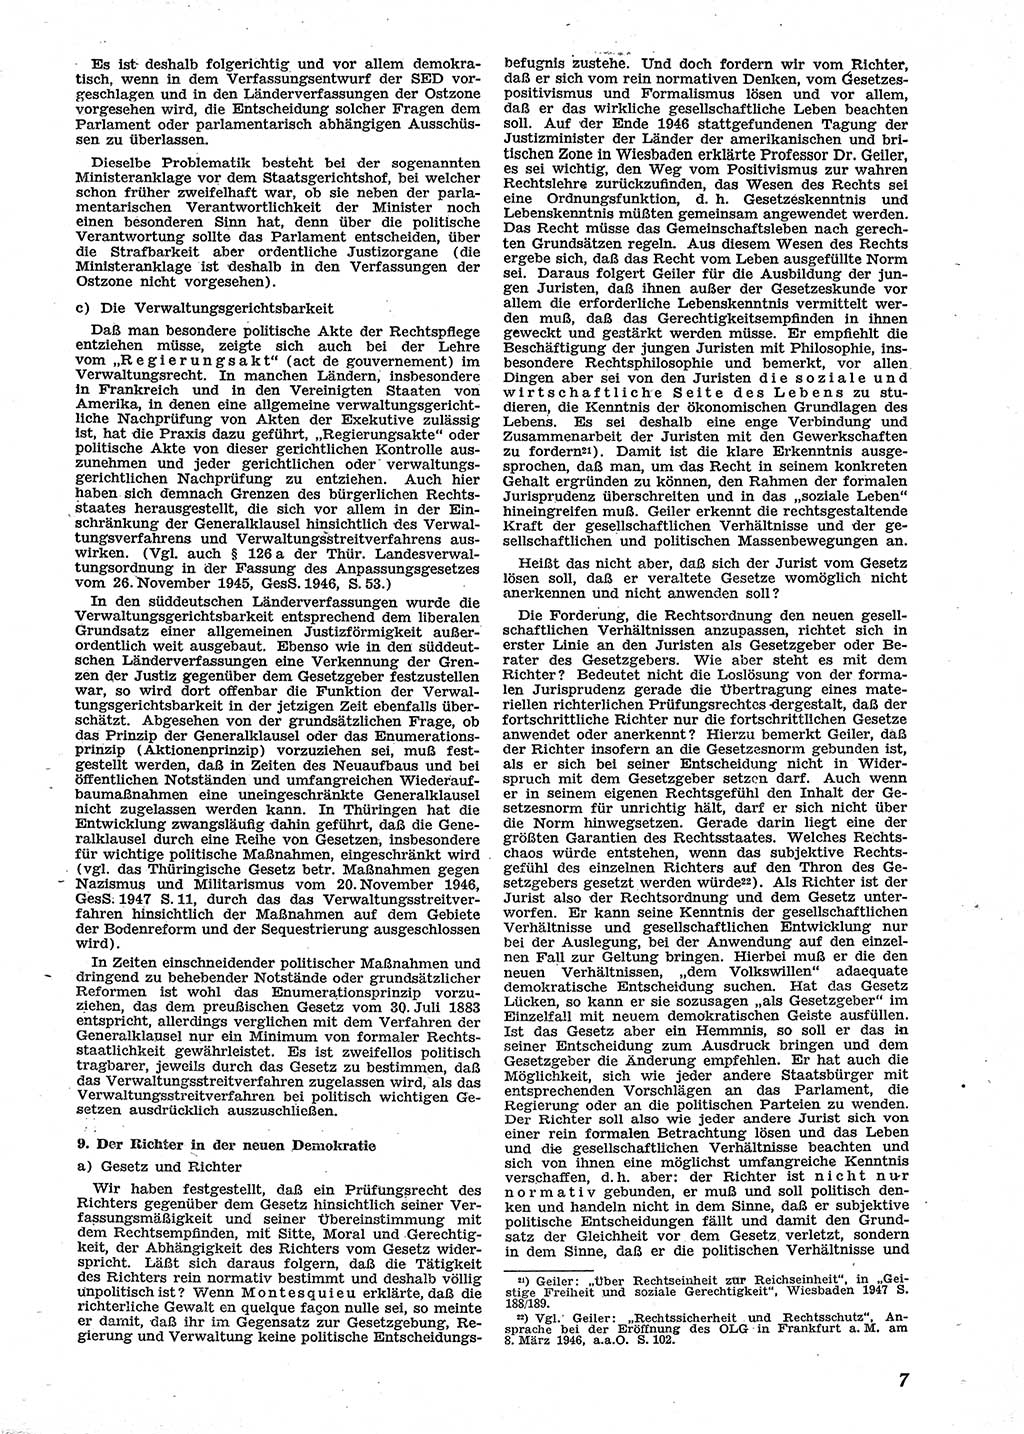 Neue Justiz (NJ), Zeitschrift für Recht und Rechtswissenschaft [Sowjetische Besatzungszone (SBZ) Deutschland], 2. Jahrgang 1948, Seite 7 (NJ SBZ Dtl. 1948, S. 7)